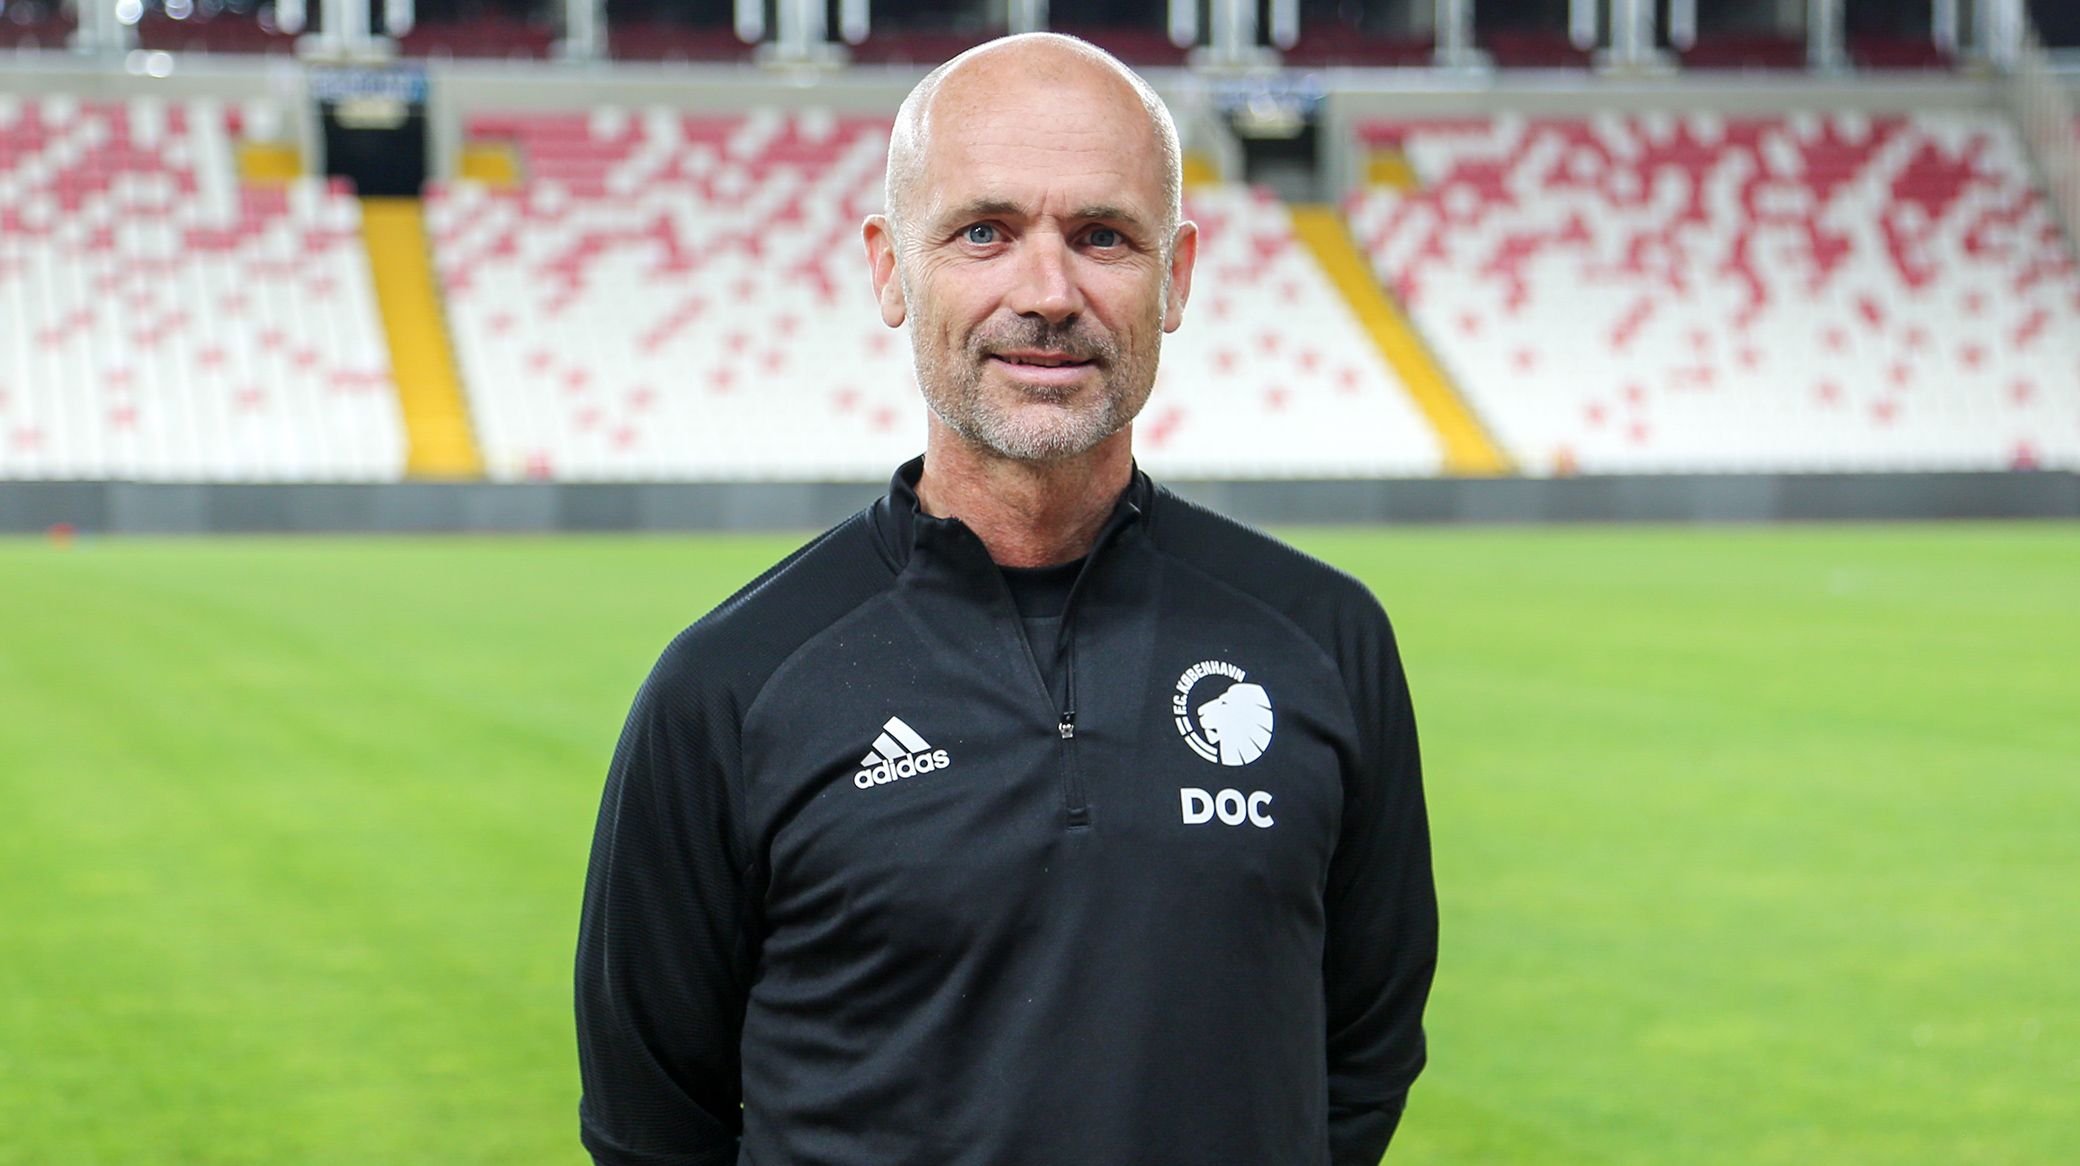 Klublæge Morten Boesen